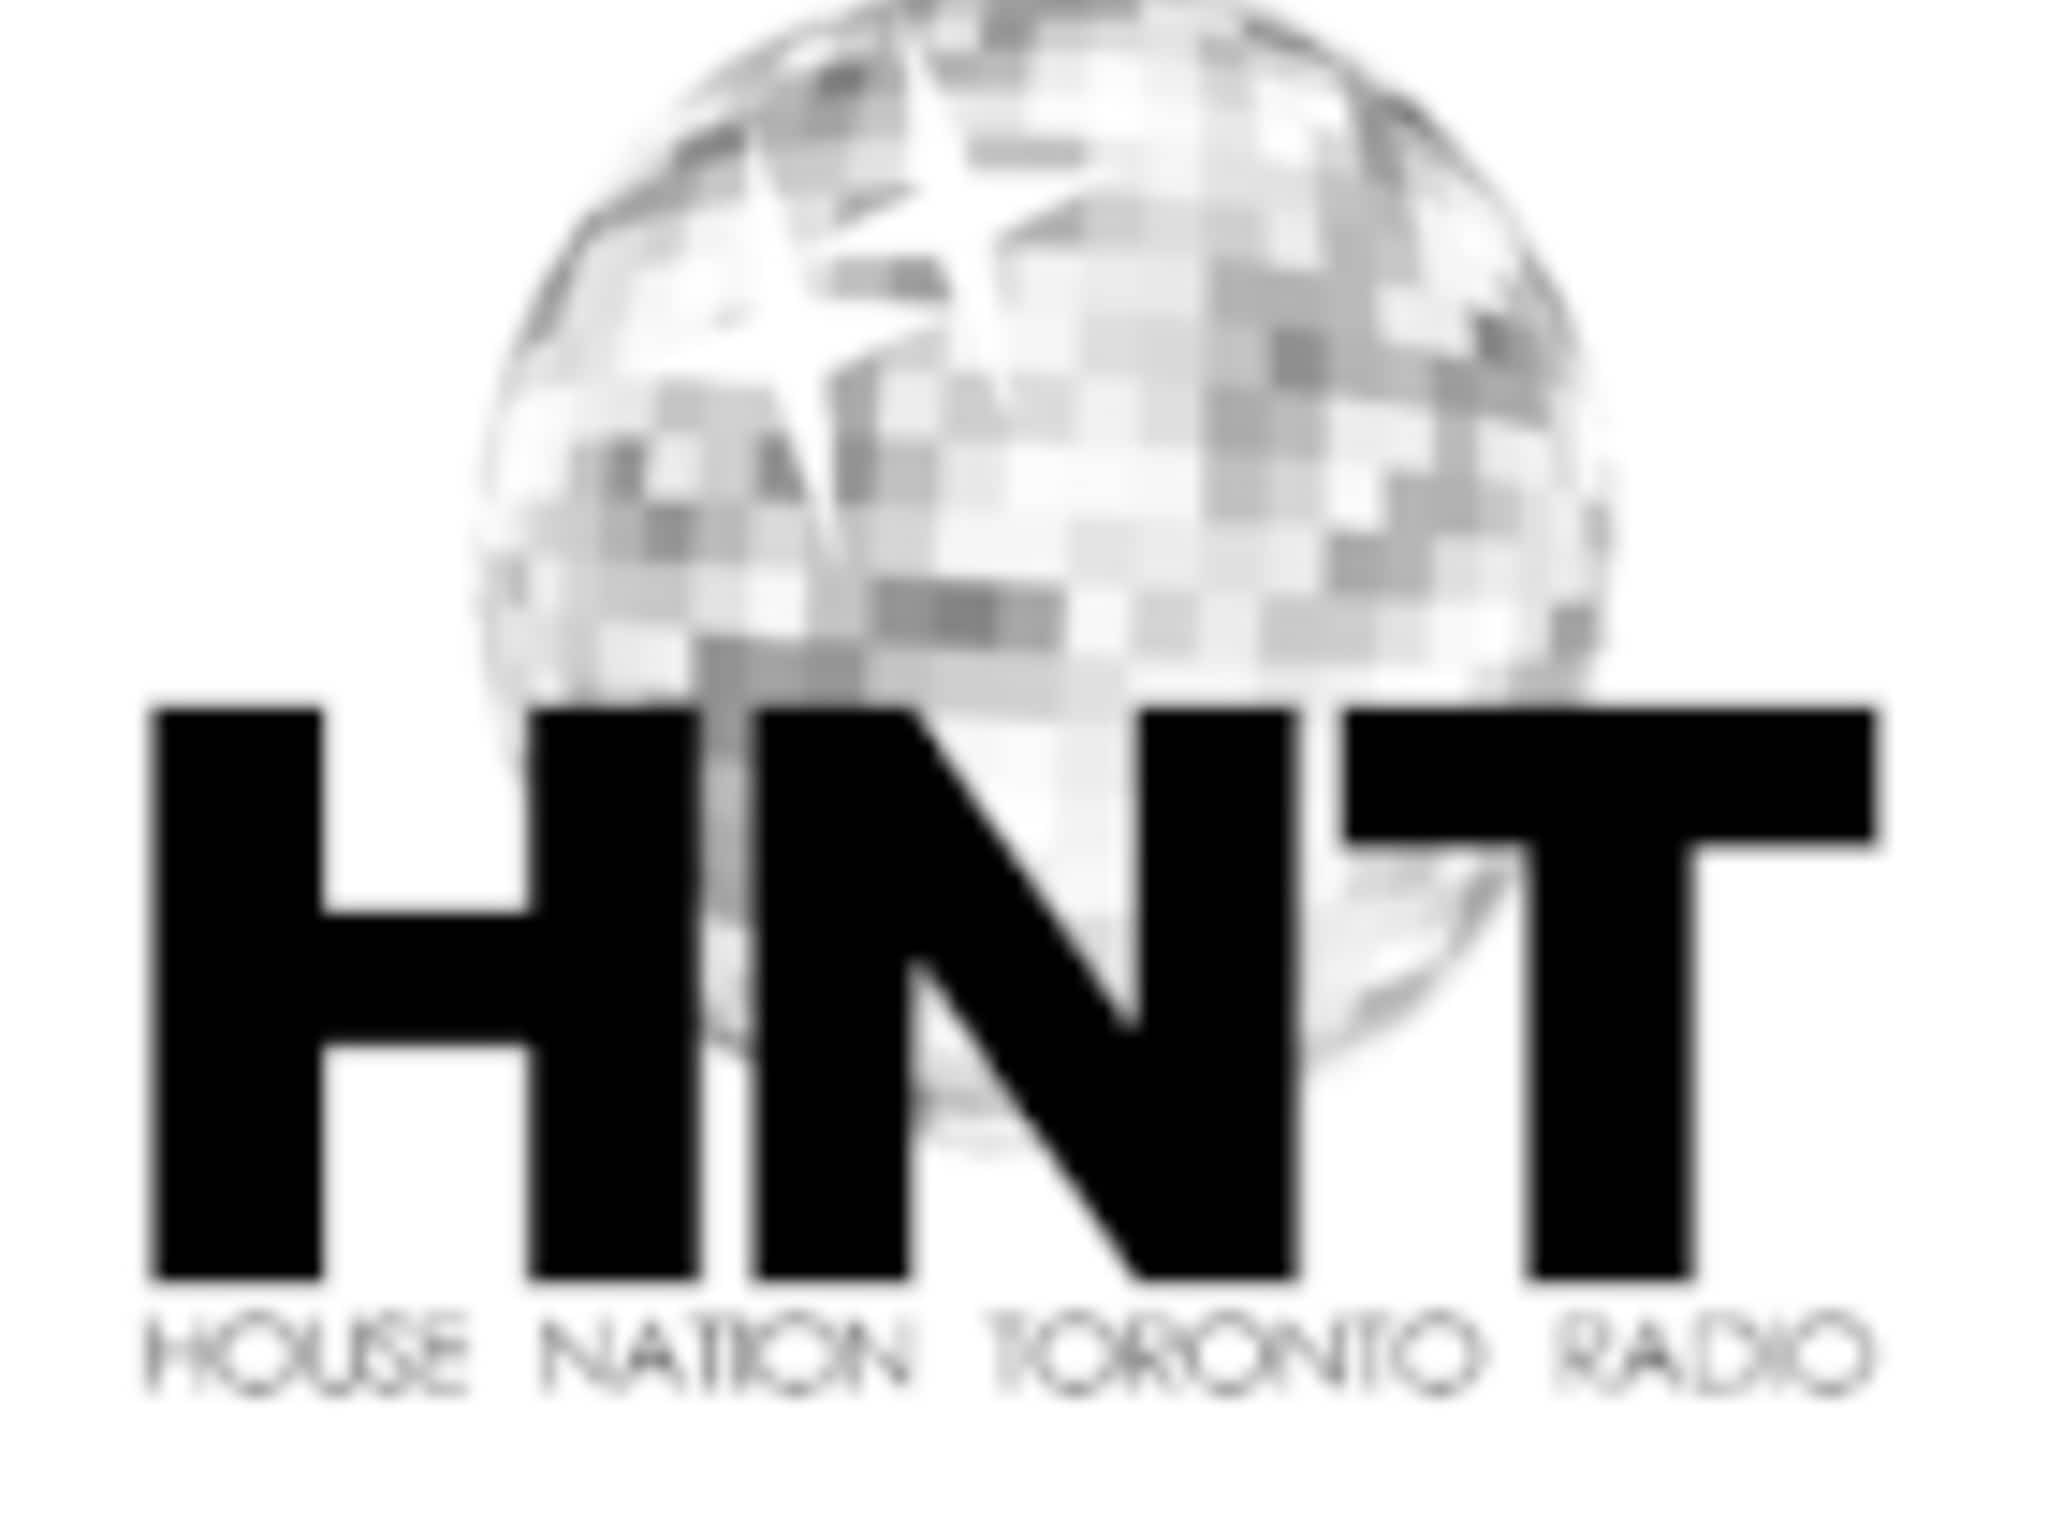 photo House Nation Radio